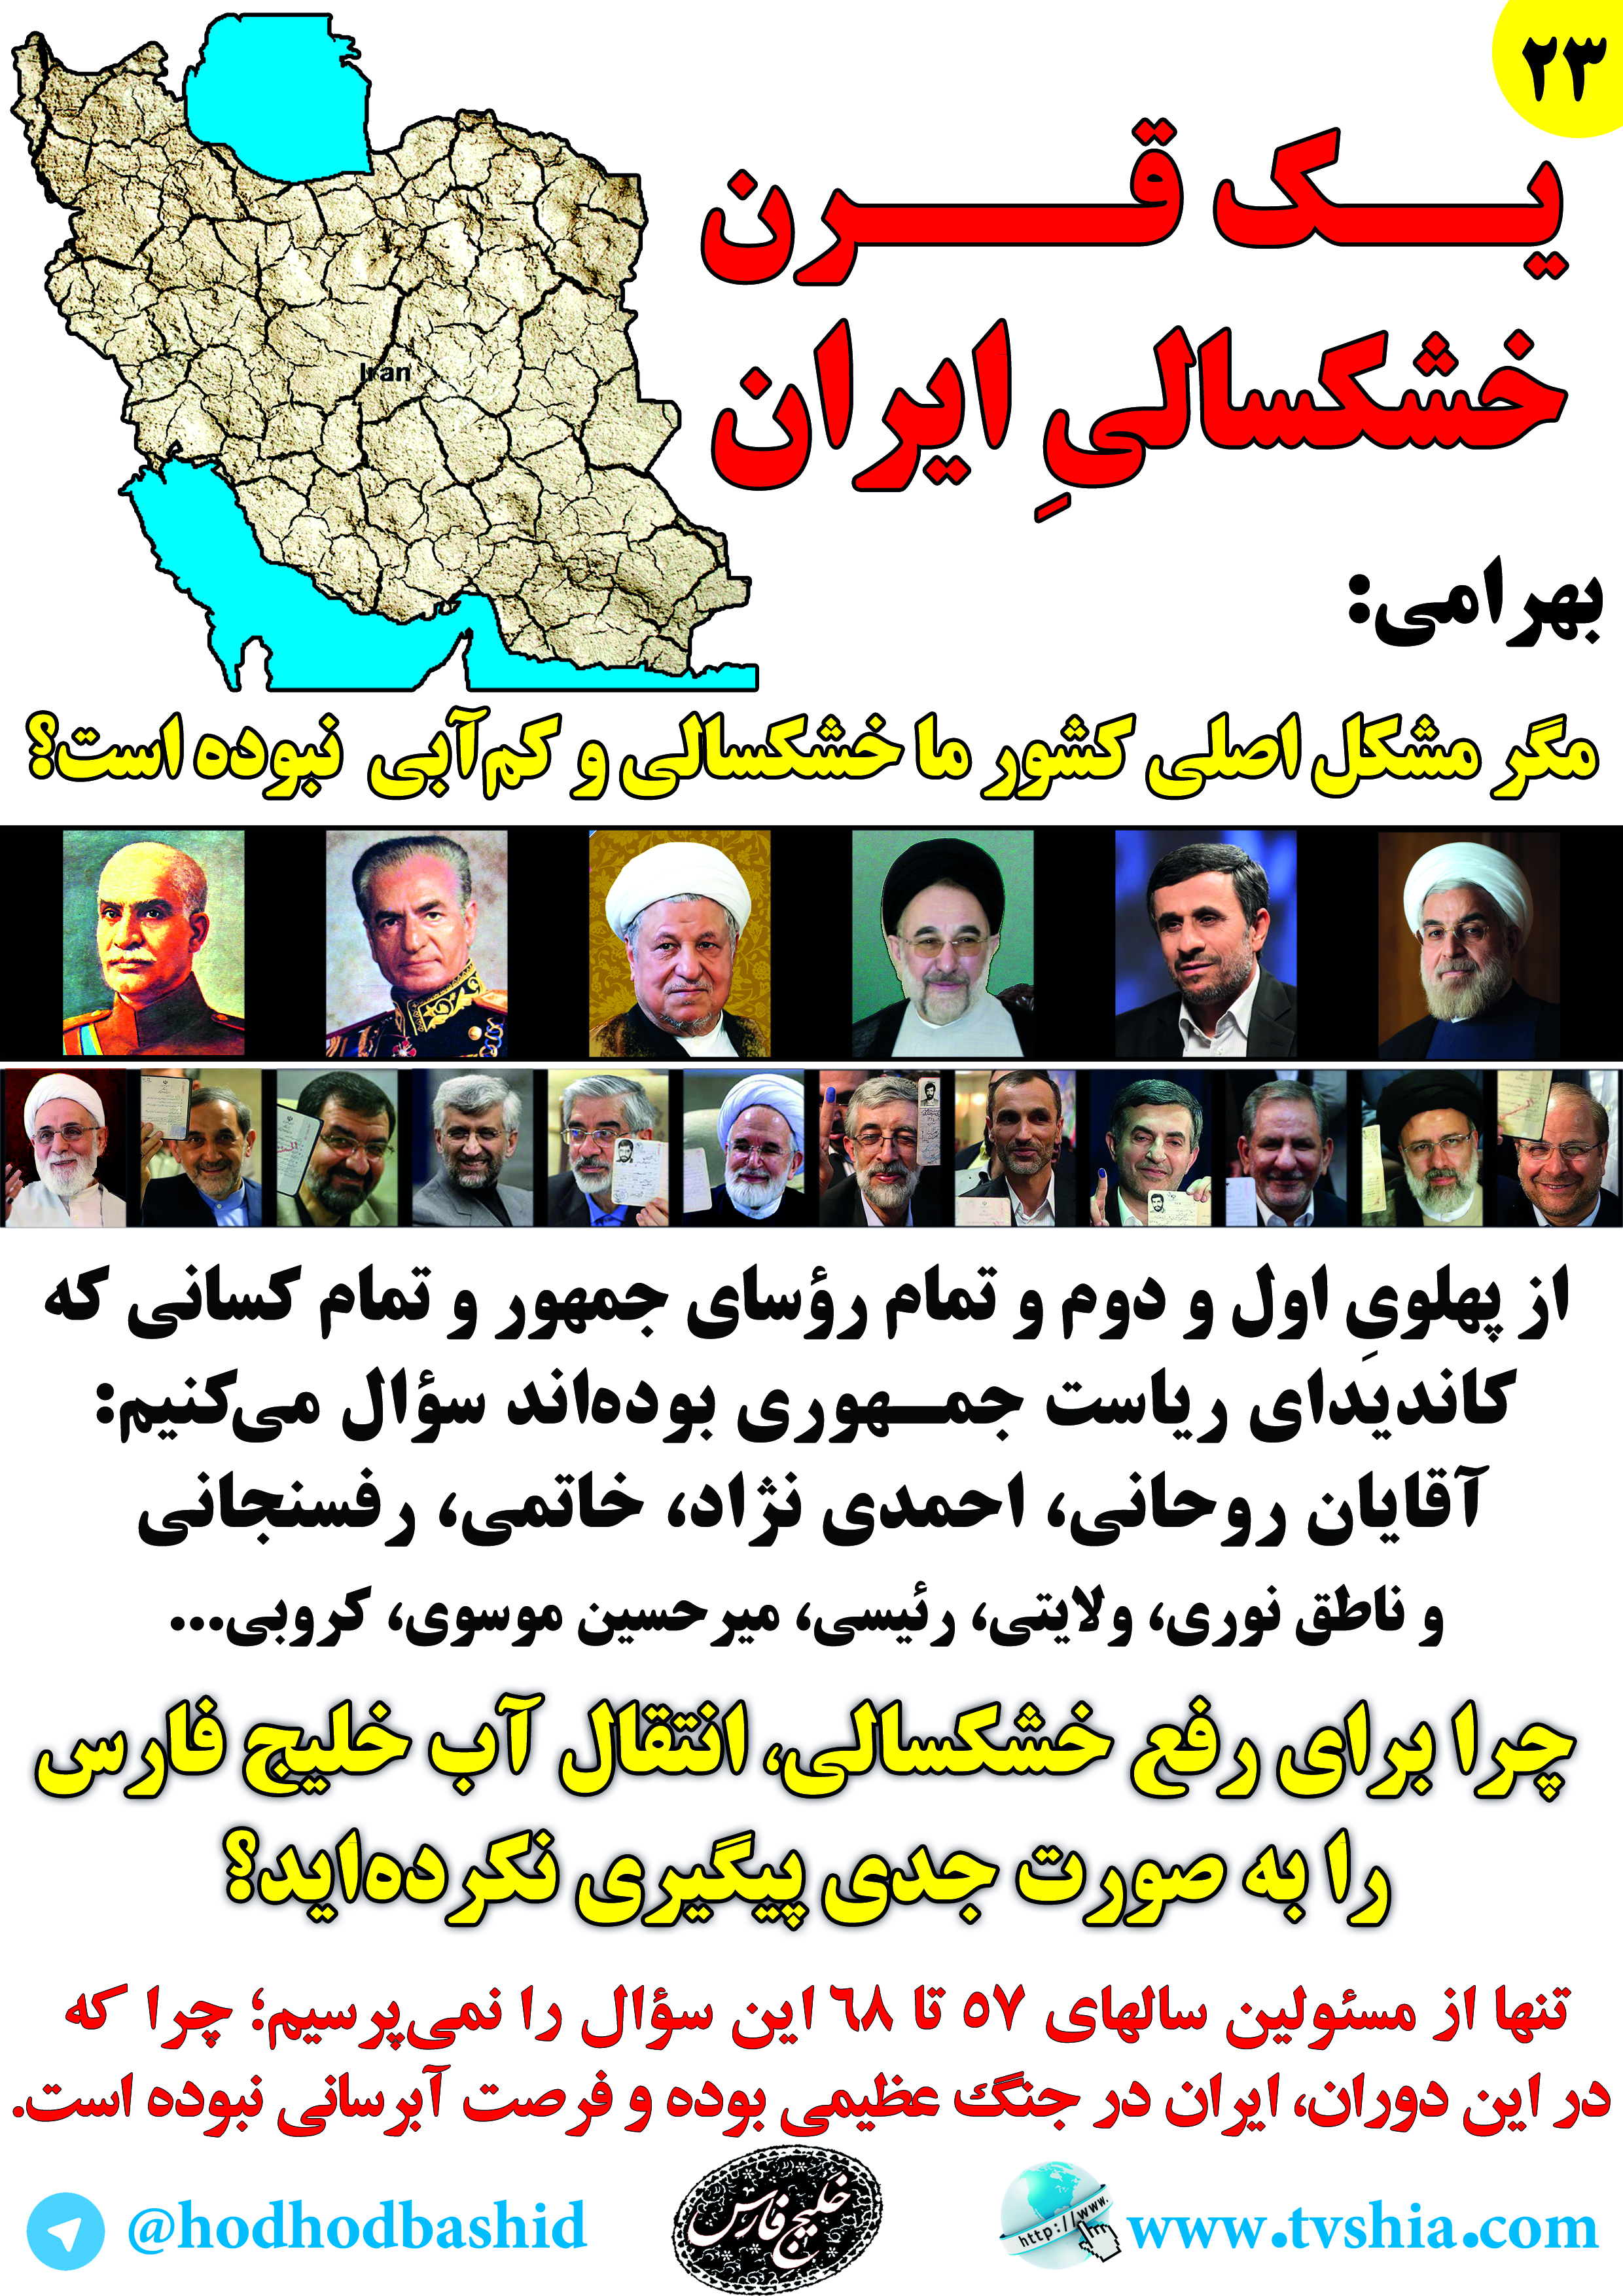 مناظره زنده ی تلویزیونی اقتصادی علی بهرامی نیکو با رئیس جمهور محترم دکتر حسن روحانی